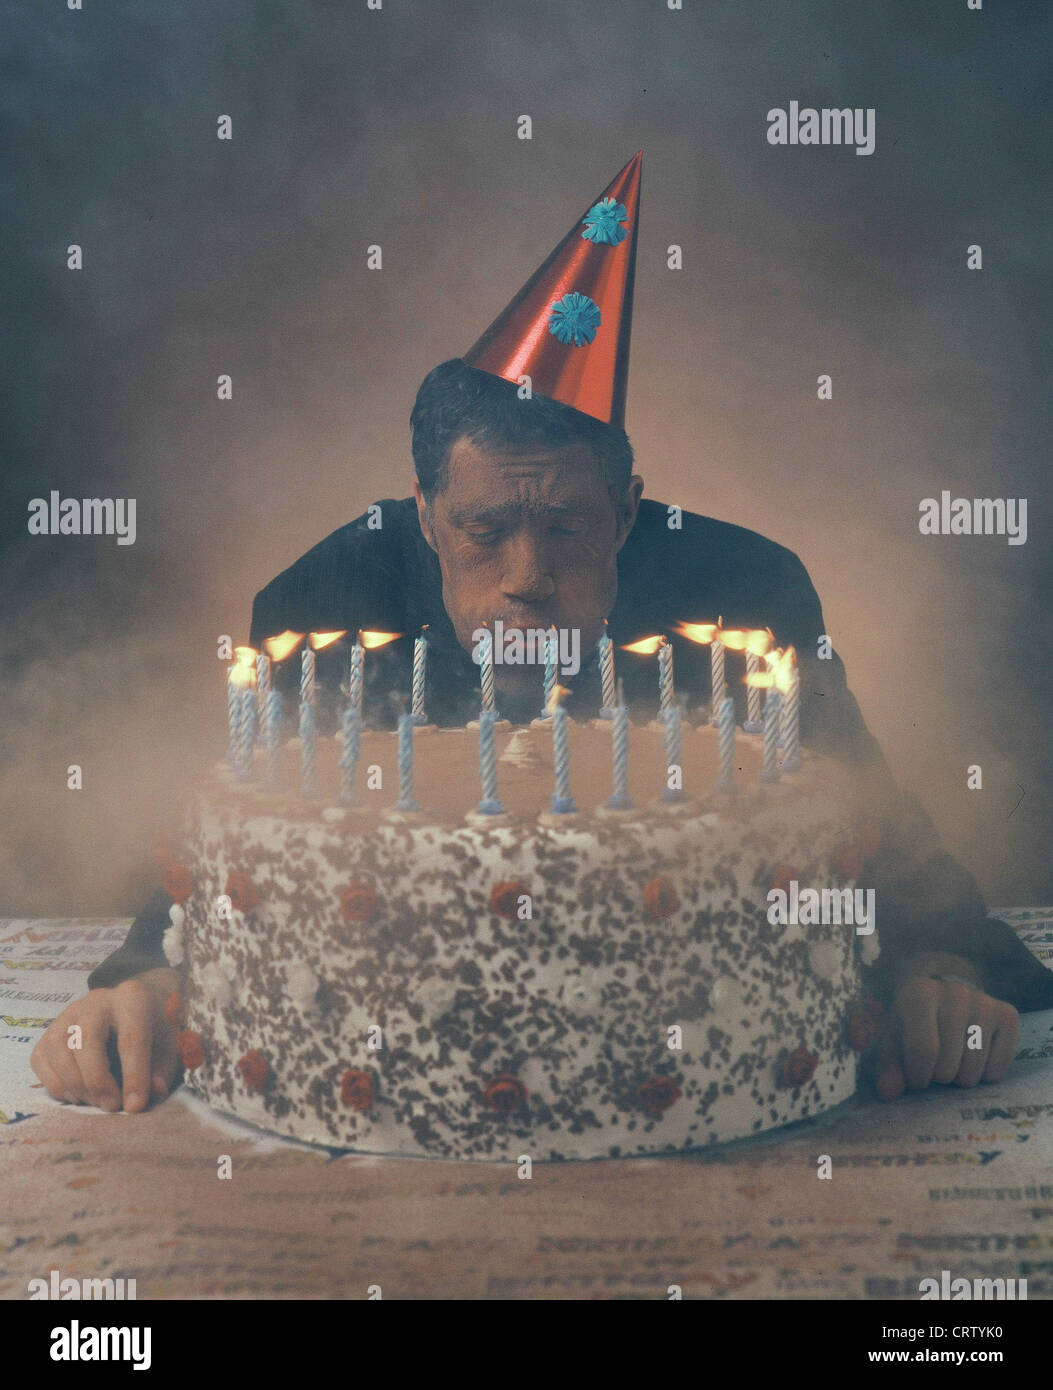 Un uomo si brucia le candele della sua torta di compleanno Foto Stock